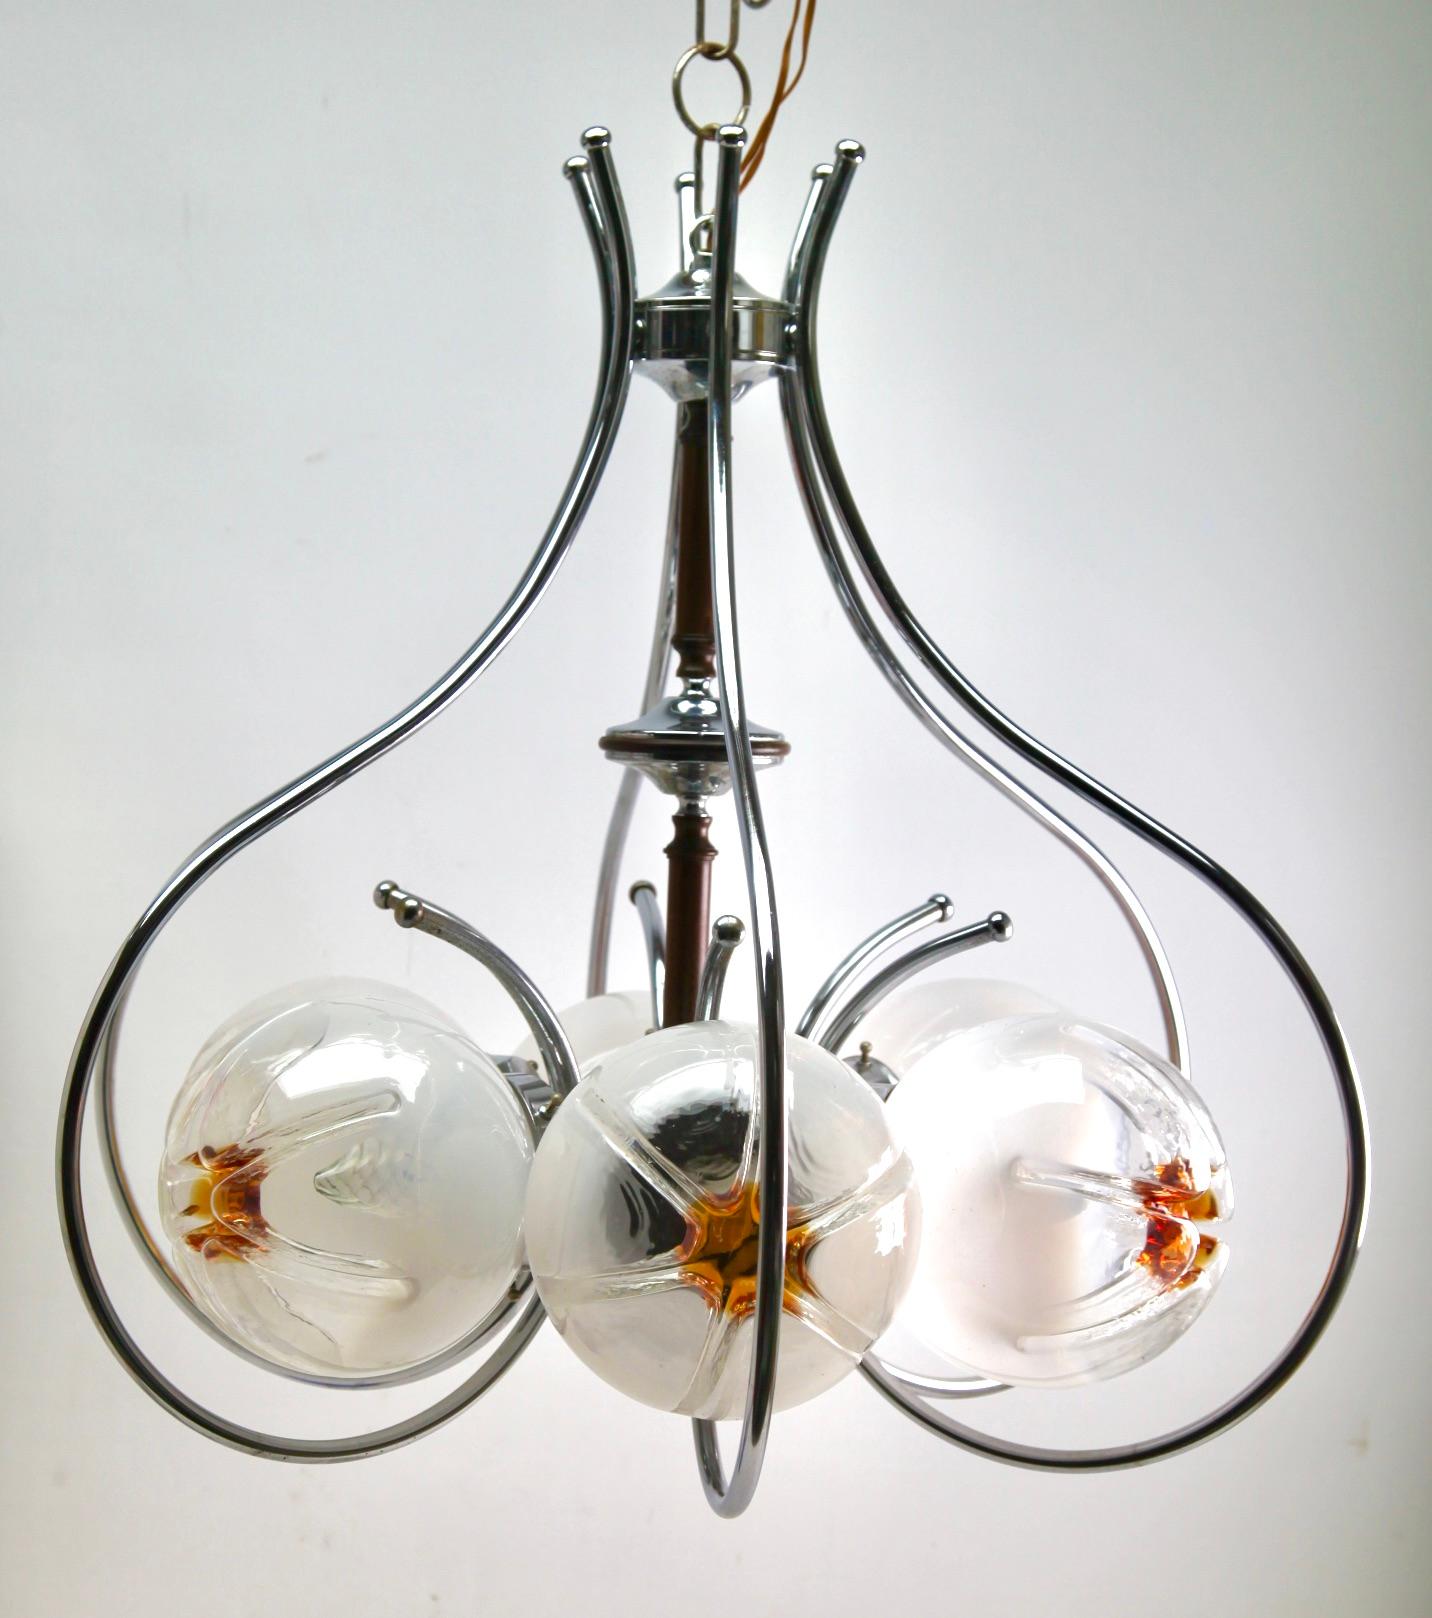 Pendentif avec un globe en verre transparent avec des inclusions orange, Italie, 1970 par Mazzega.
Jetant une belle lumière ondulée sur un mur et un plafond.

La lampe fonctionne partout dans le monde

Récemment nettoyé et poli afin qu'il soit